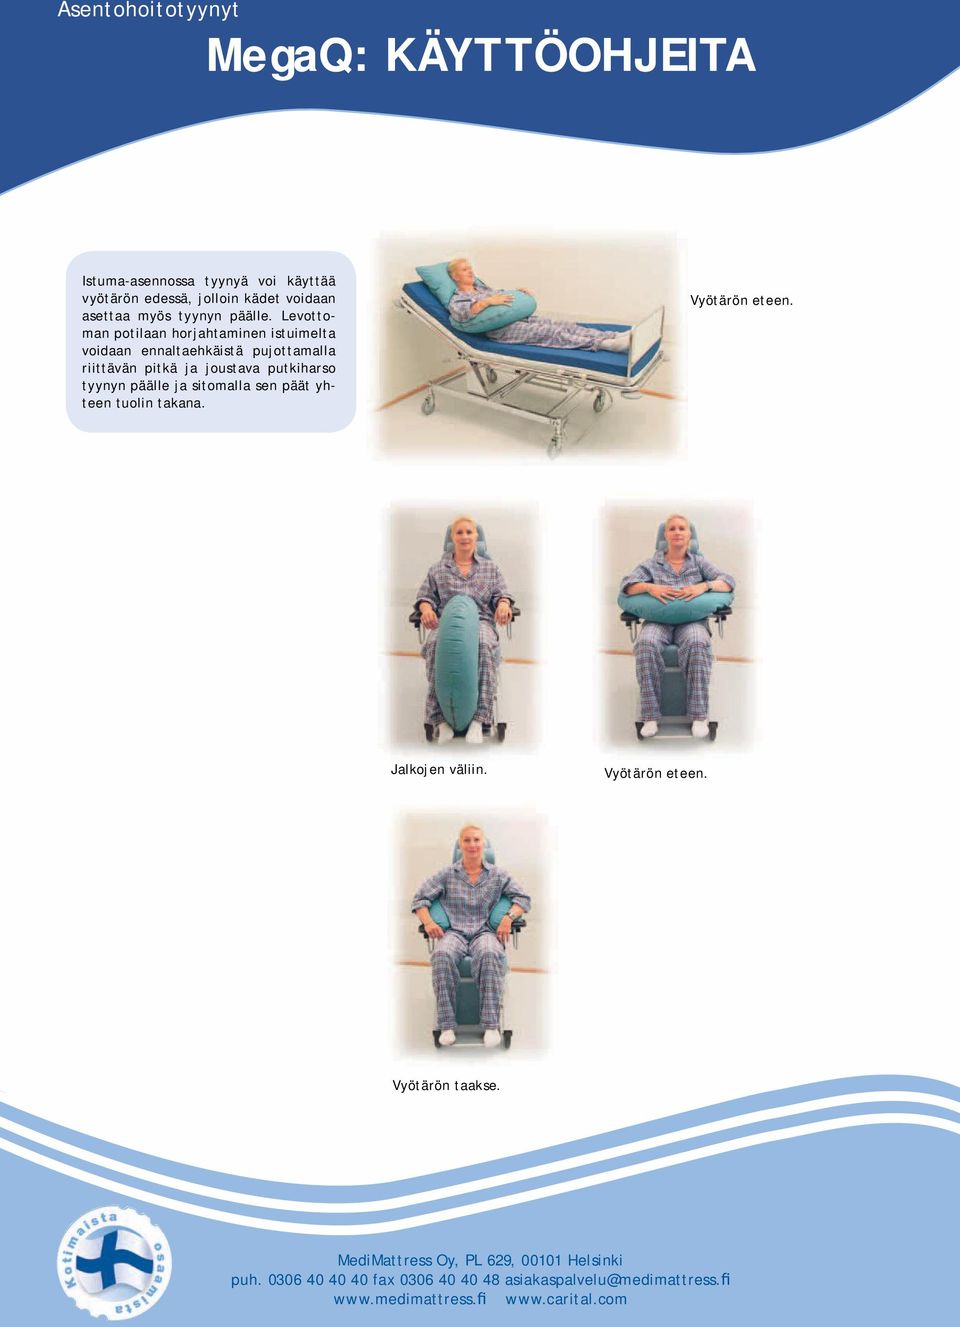 Levottoman potilaan horjahtaminen istuimelta voidaan ennaltaehkäistä pujottamalla riittävän